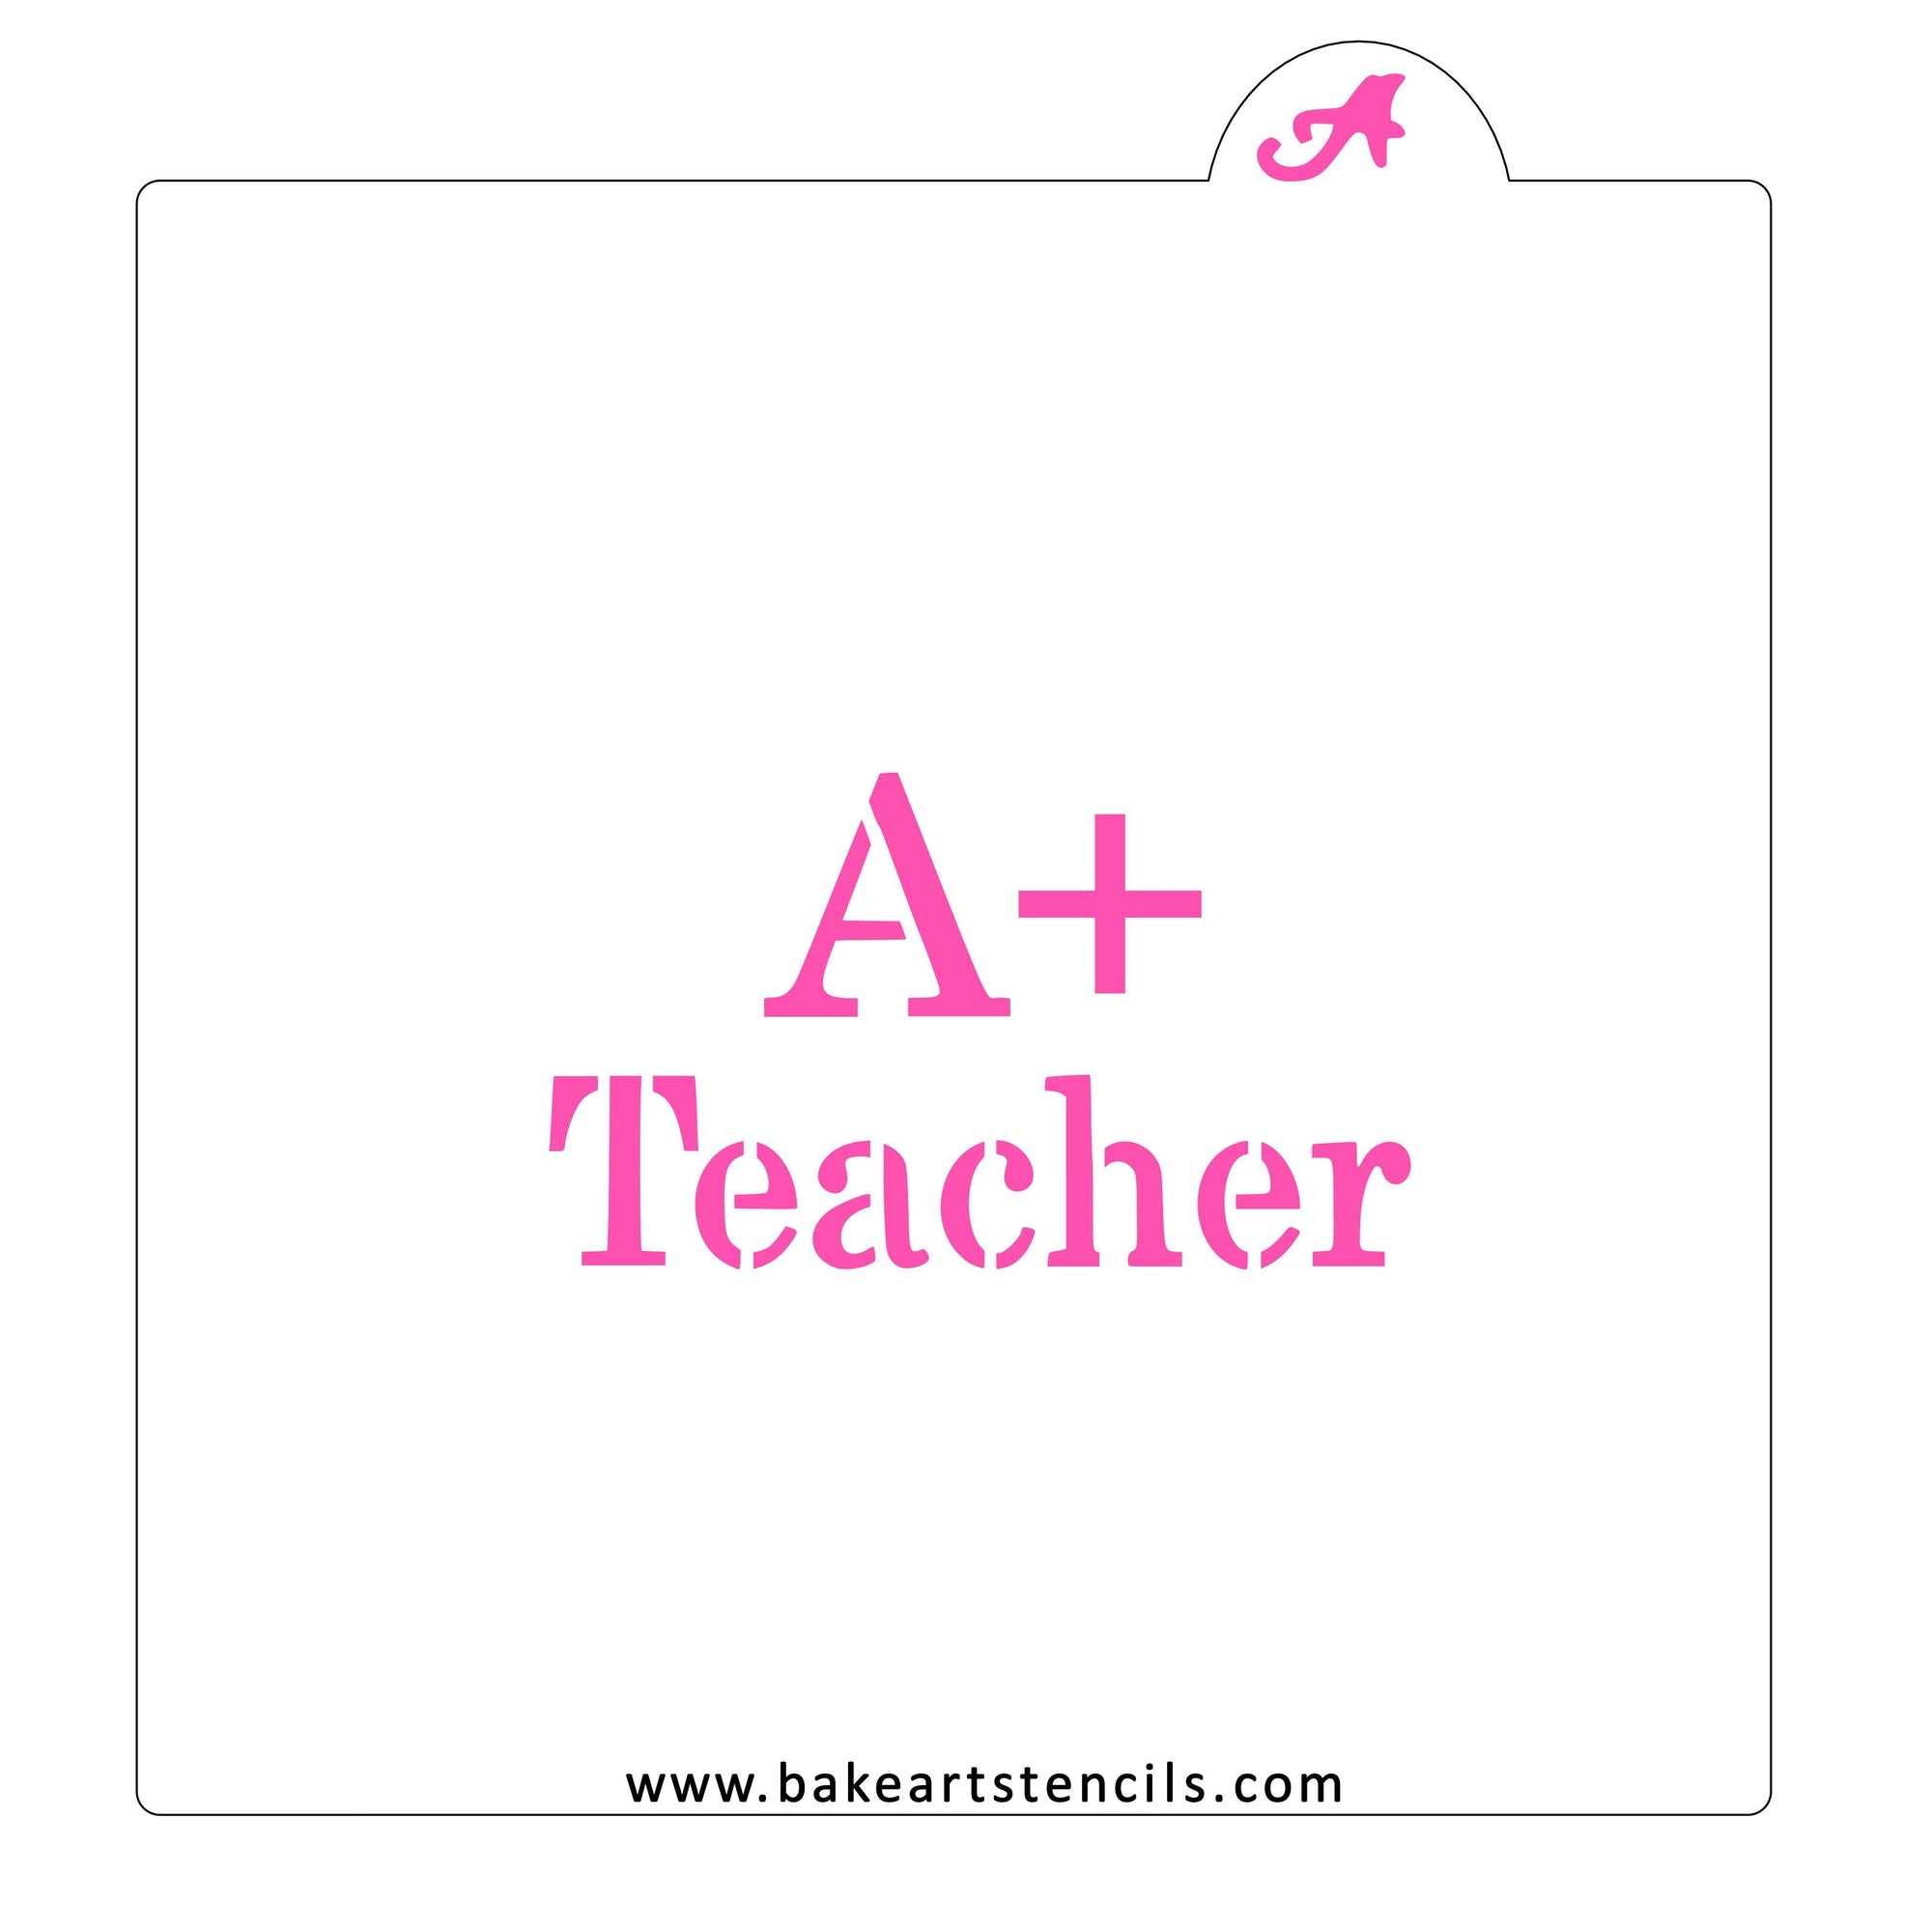 A+ Teacher Cookie Stencil bakeartstencil